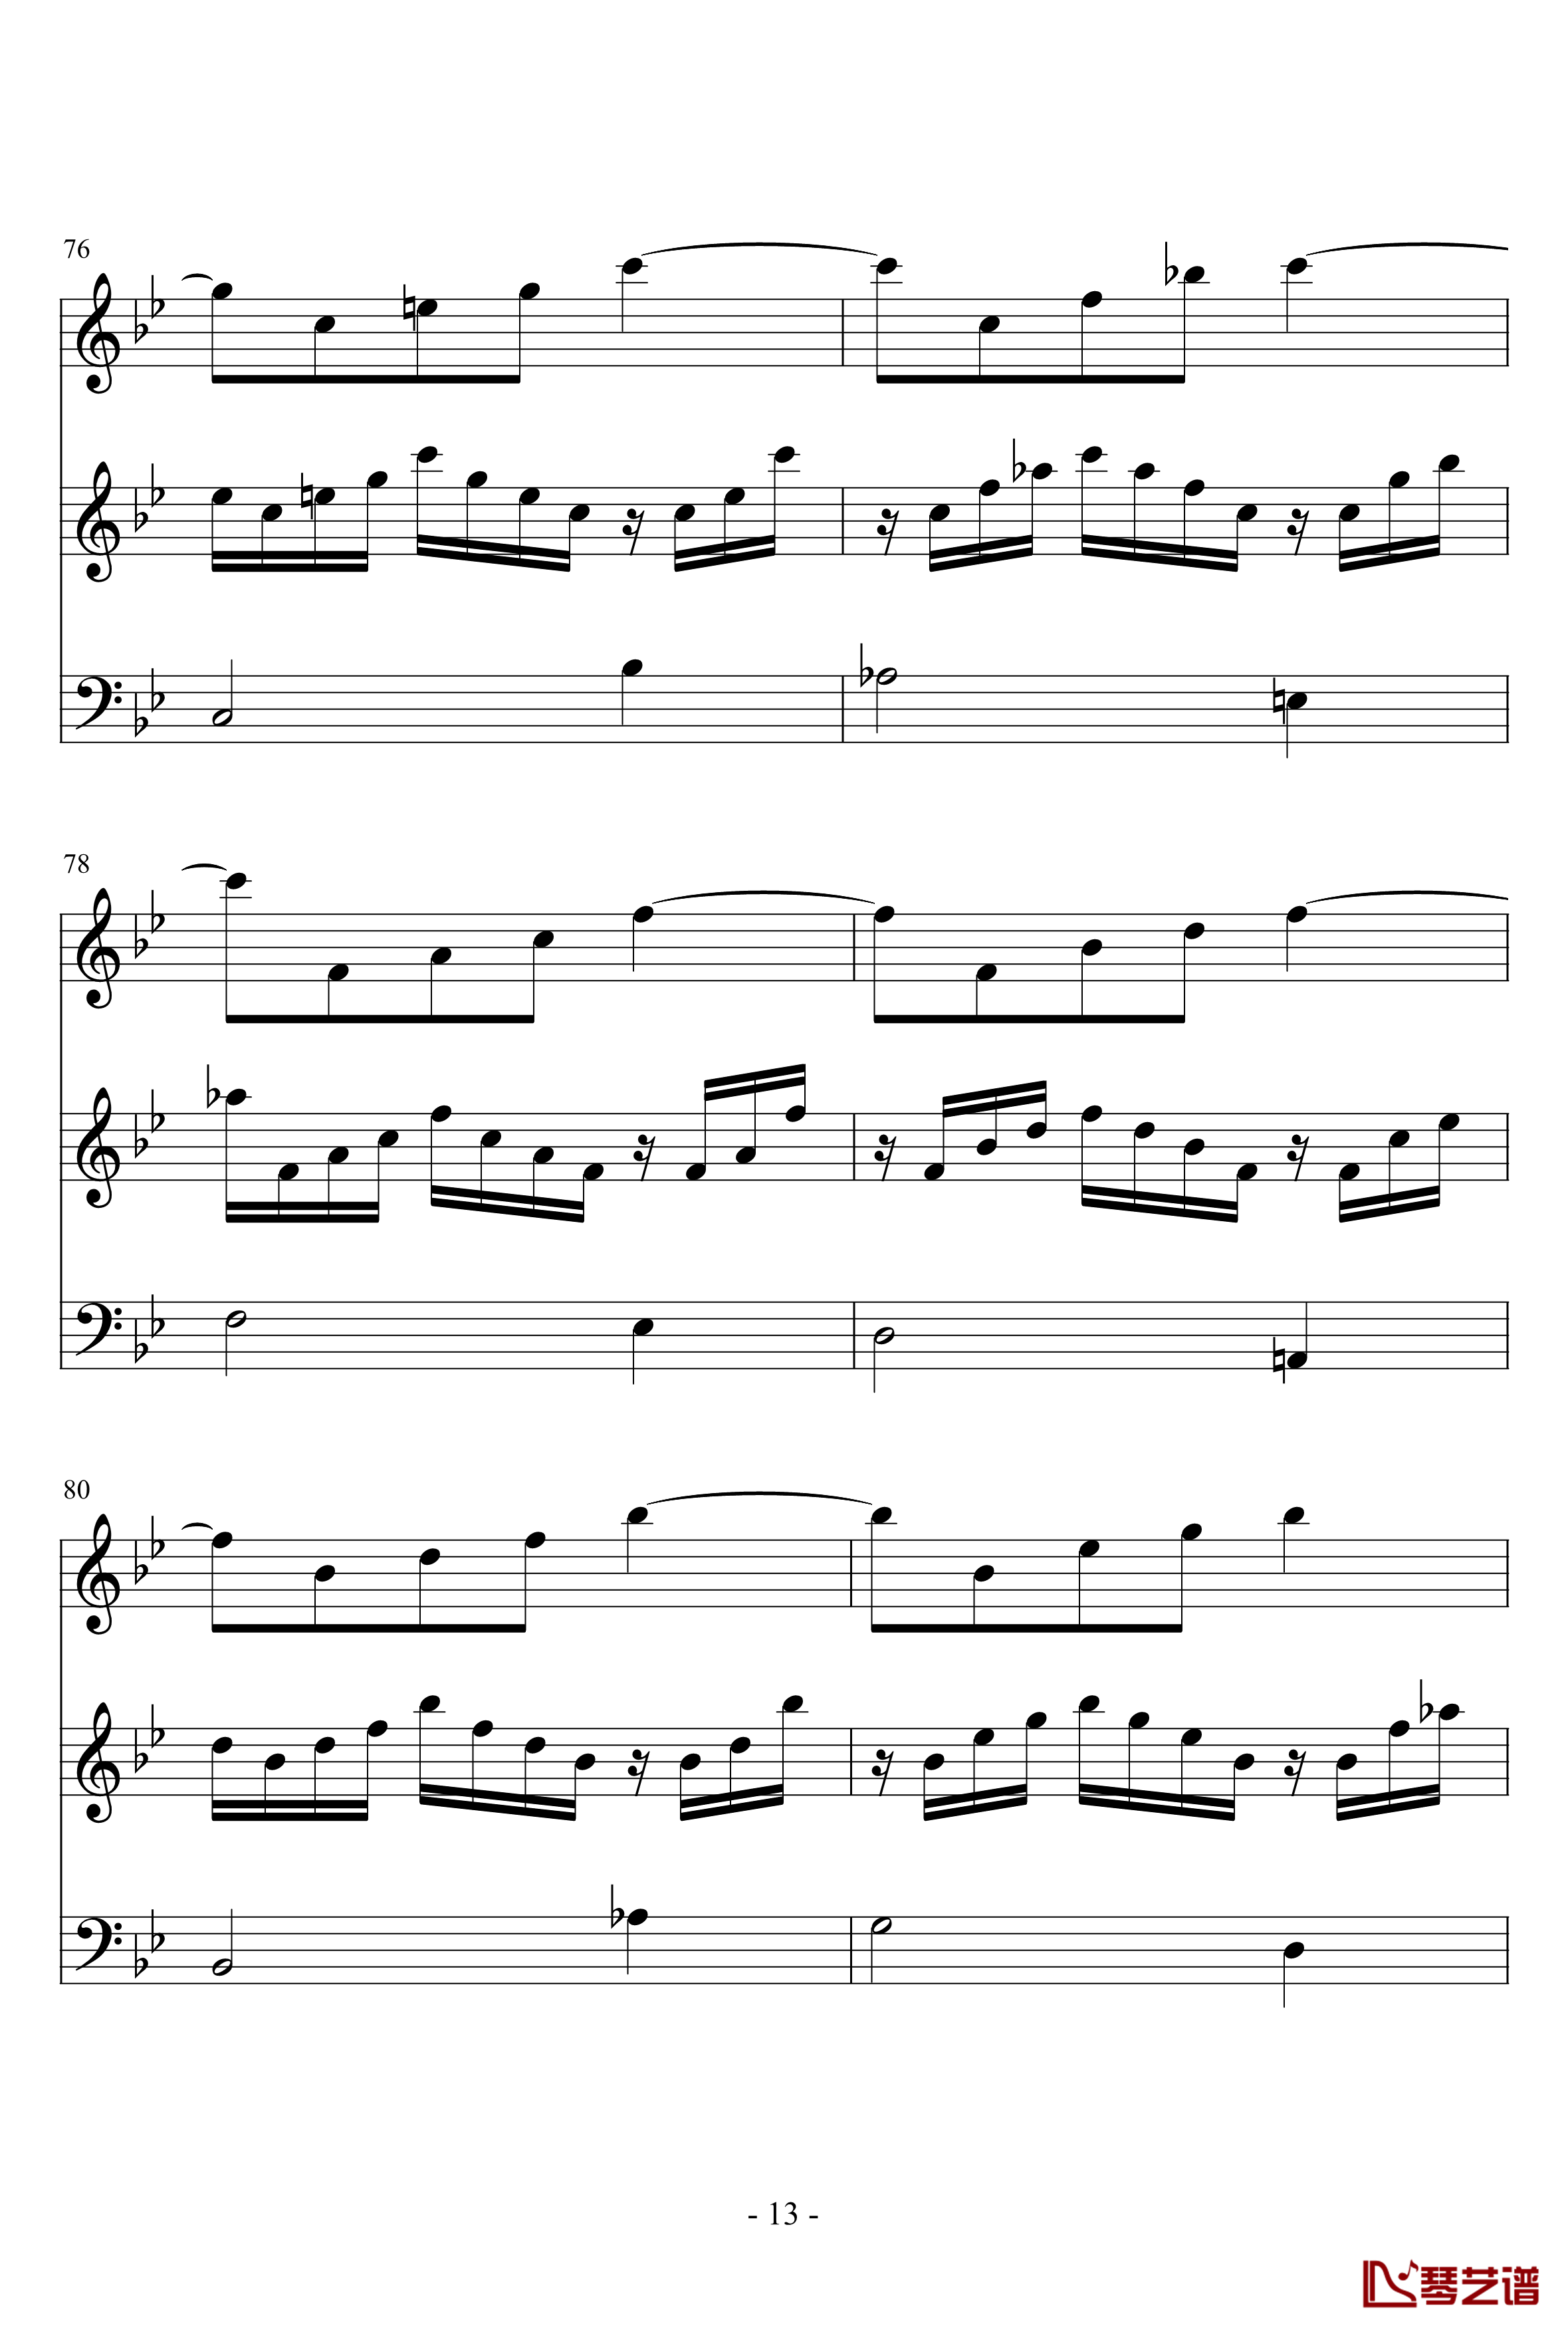 长笛与羽管键琴奏鸣曲第一乐章钢琴谱-巴赫-P.E.Bach13